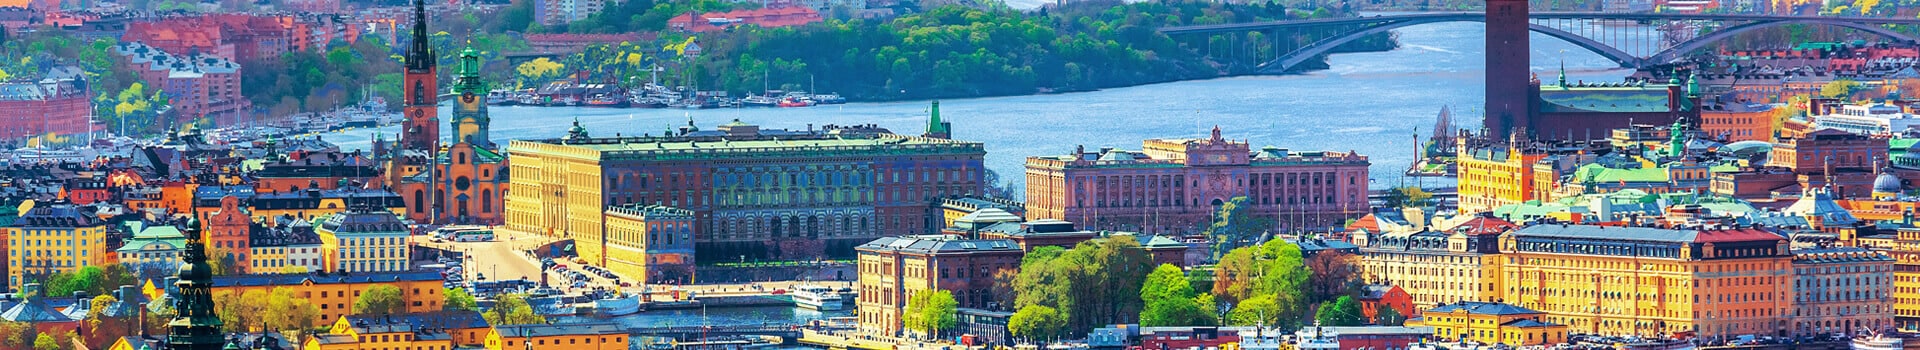 Gothenburg - Stockholm